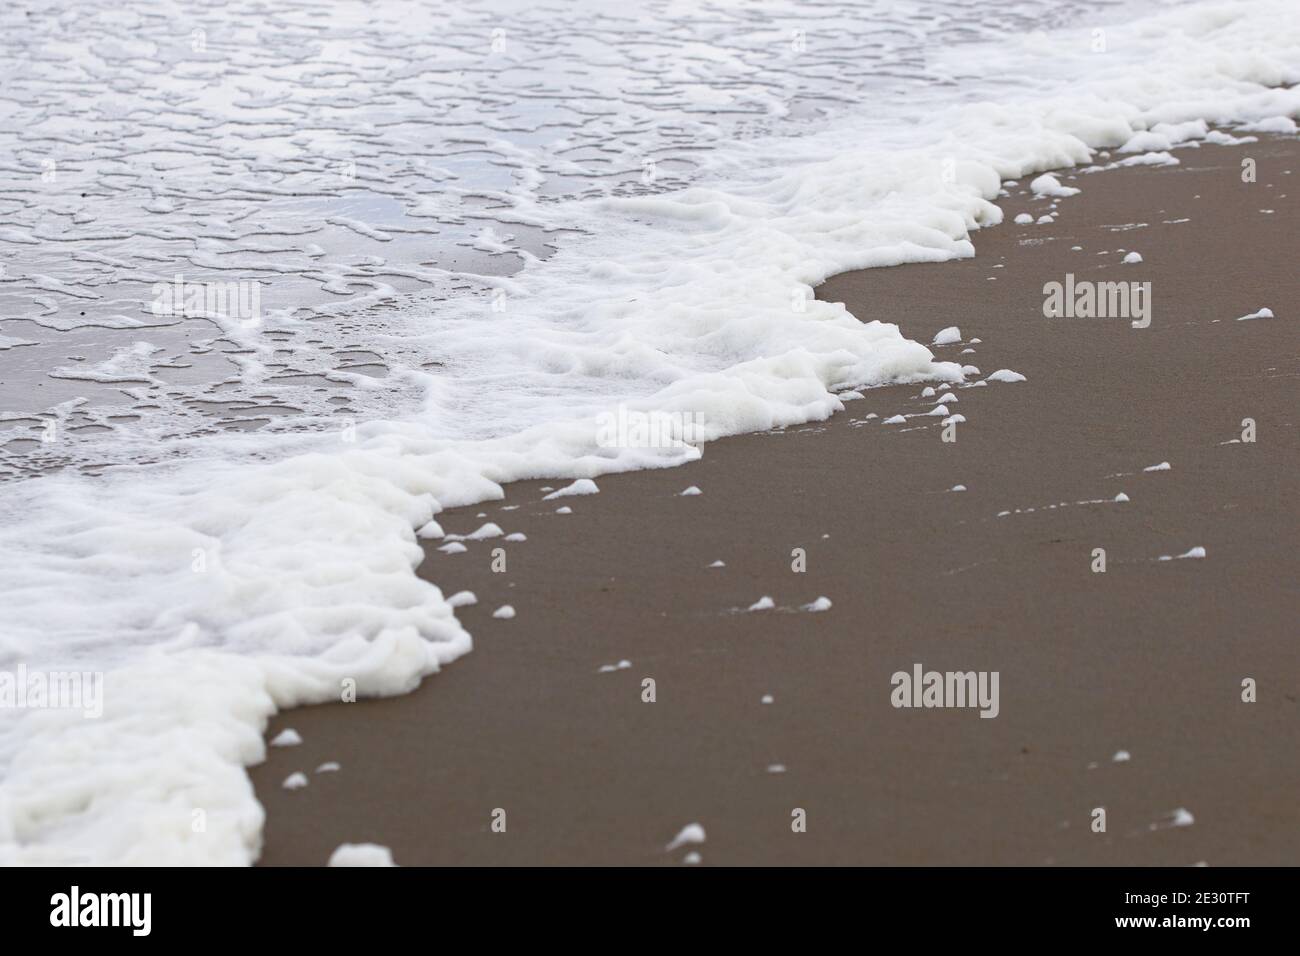 primo piano di linea del mare con schiuma, acqua schiumosa presso la spiaggia di sabbia nera Foto Stock